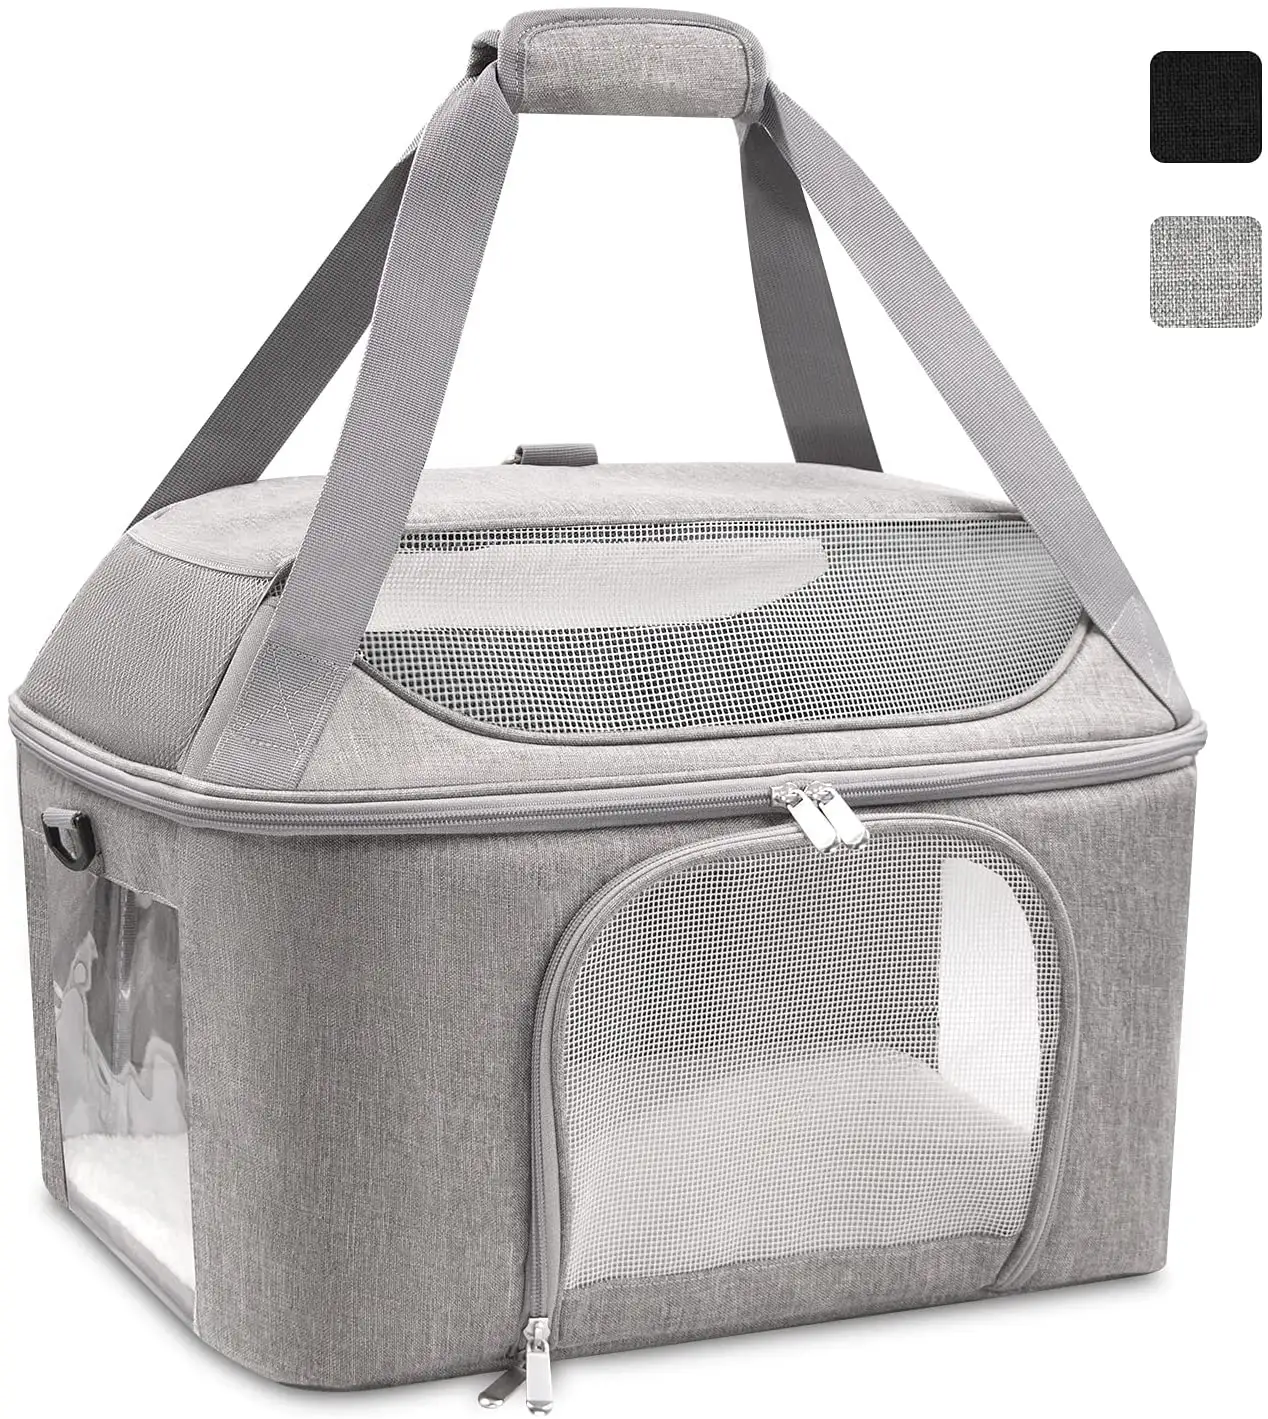 Hoge Kwaliteit Pet Carrier Bag Twee Deur Top Load Hard Side Pet Travel Carrier Bag Airline Goedgekeurd Ademend